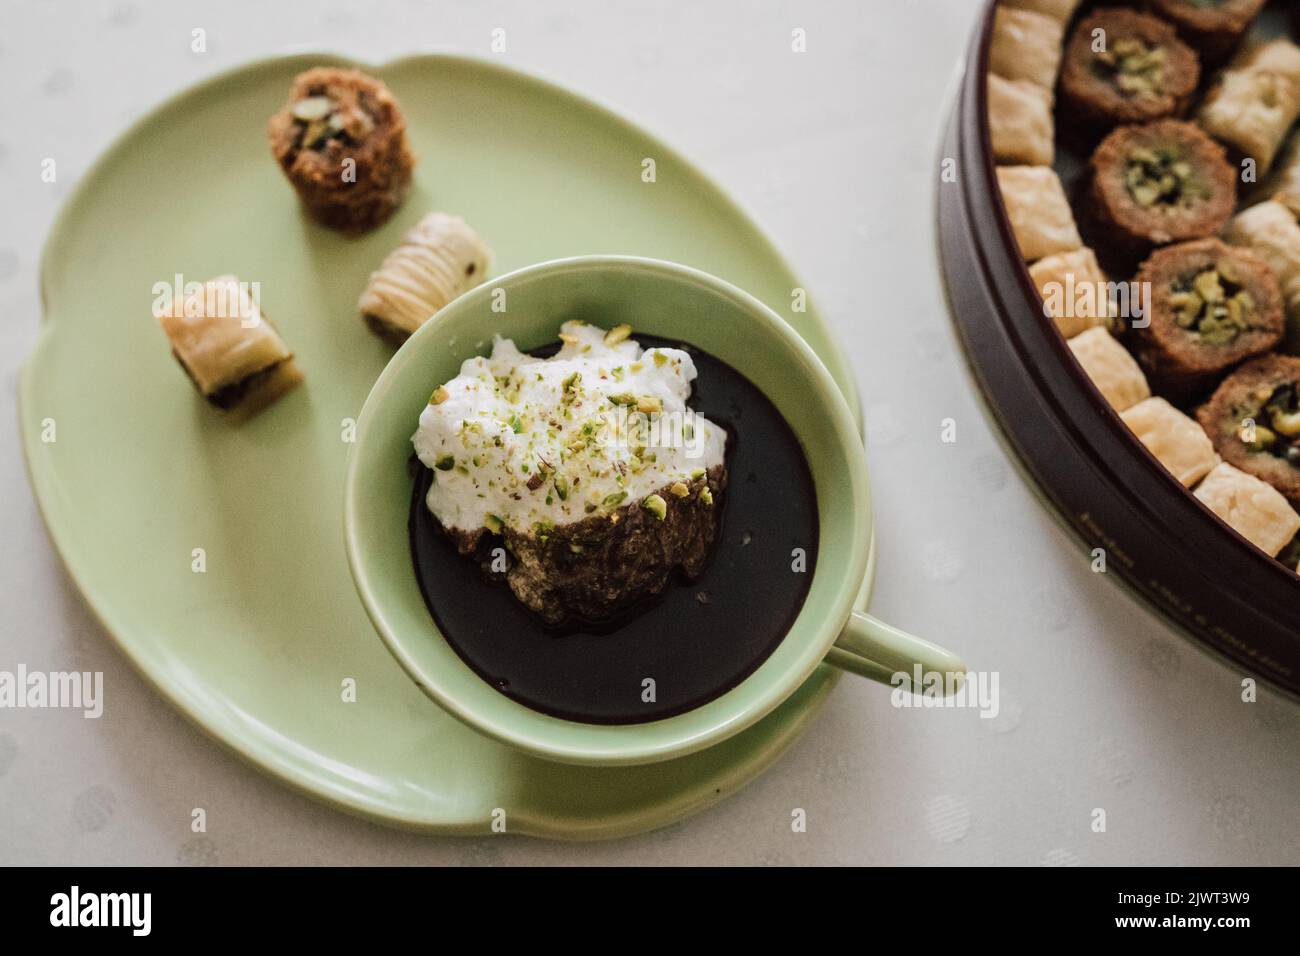 buvez du chocolat dans une assiette et une tasse vertes assorties avec divers desserts à la baklava sur une nappe blanche à pois Banque D'Images